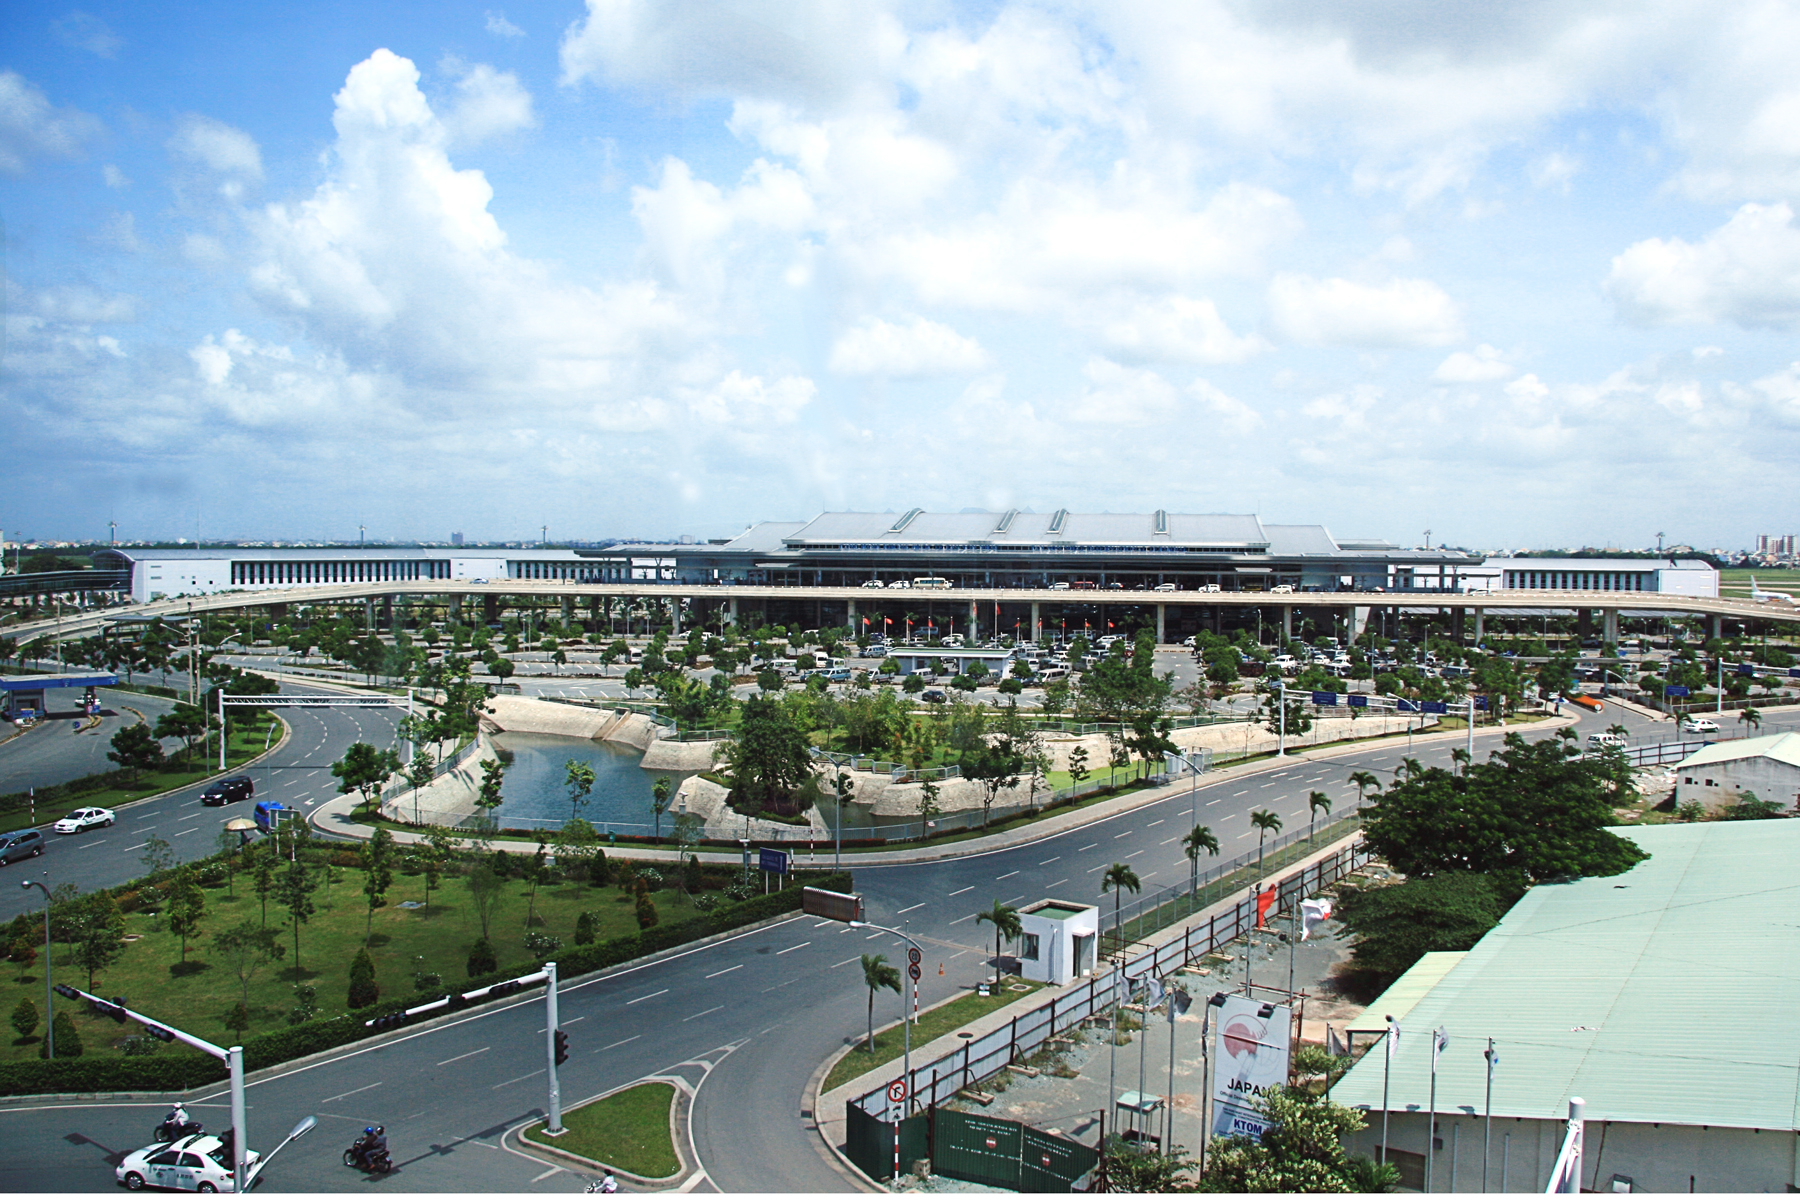 Thuê xe đưa đón sân bay Tân Sơn Nhất